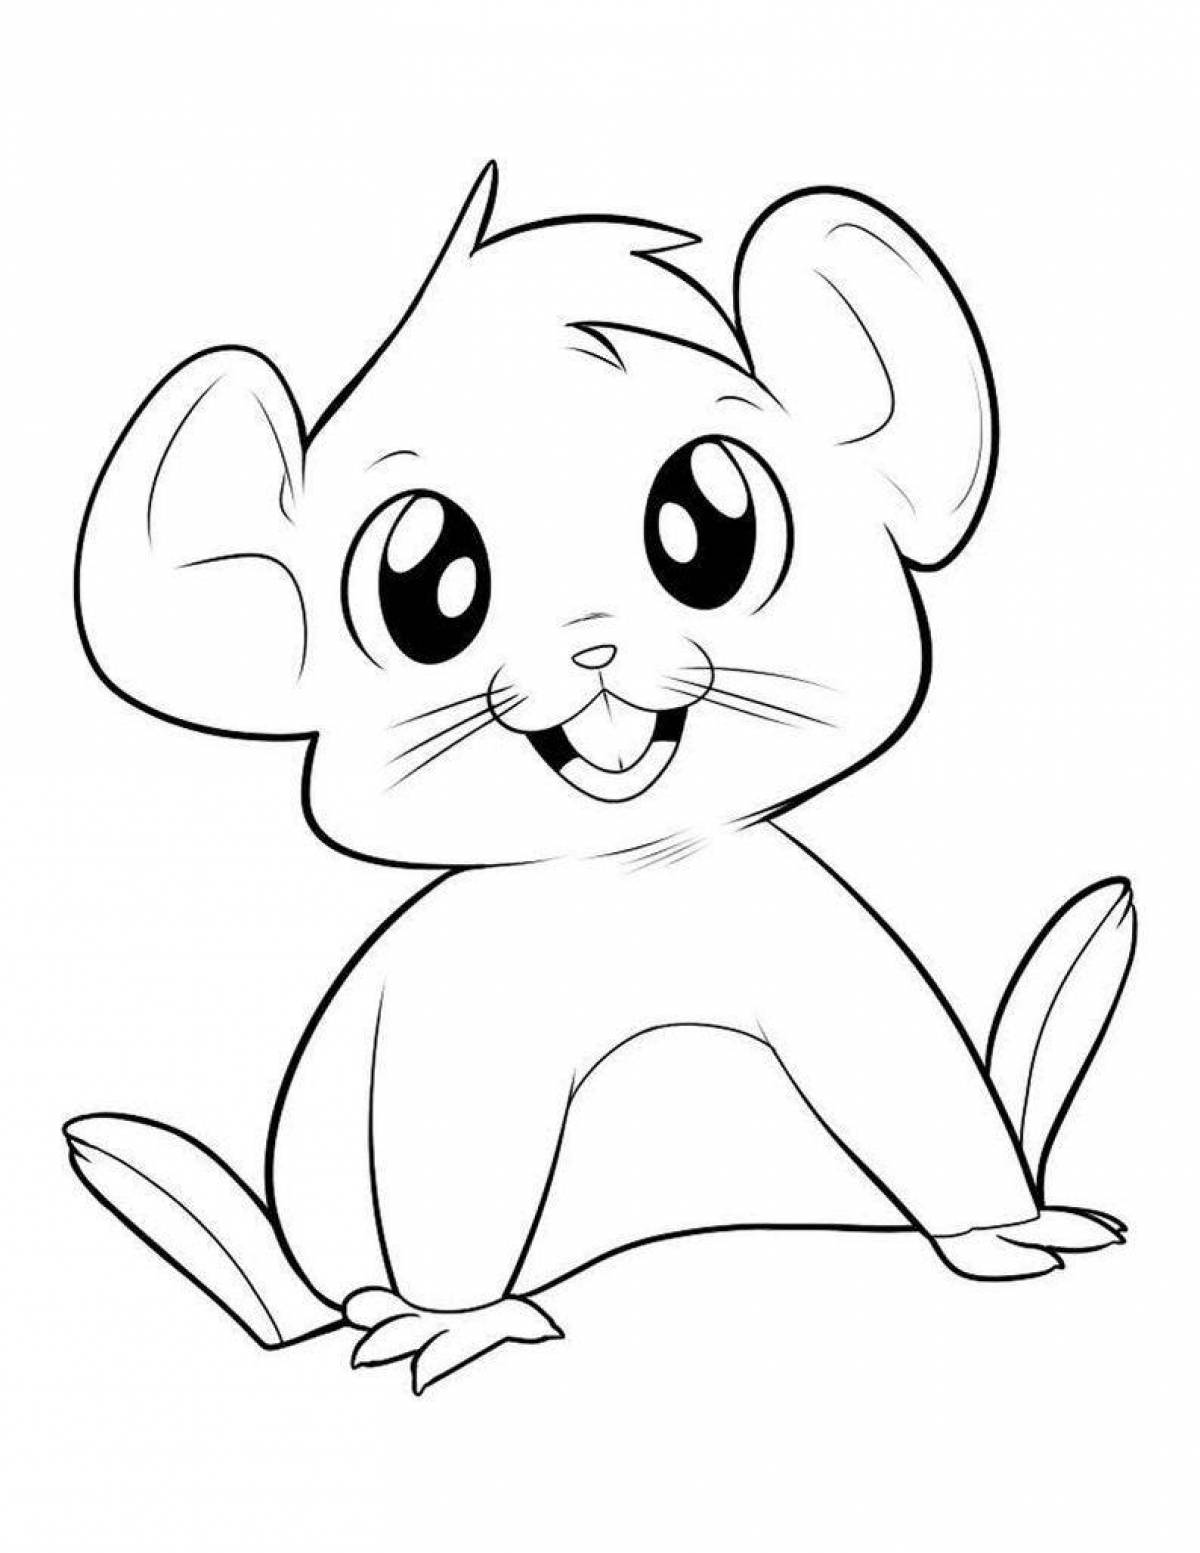 Раскраска мышь распечатать. Раскраска мышка. Раскраска мышонок. Мультяшные рисунки карандашом. Мышонок раскраска для детей.